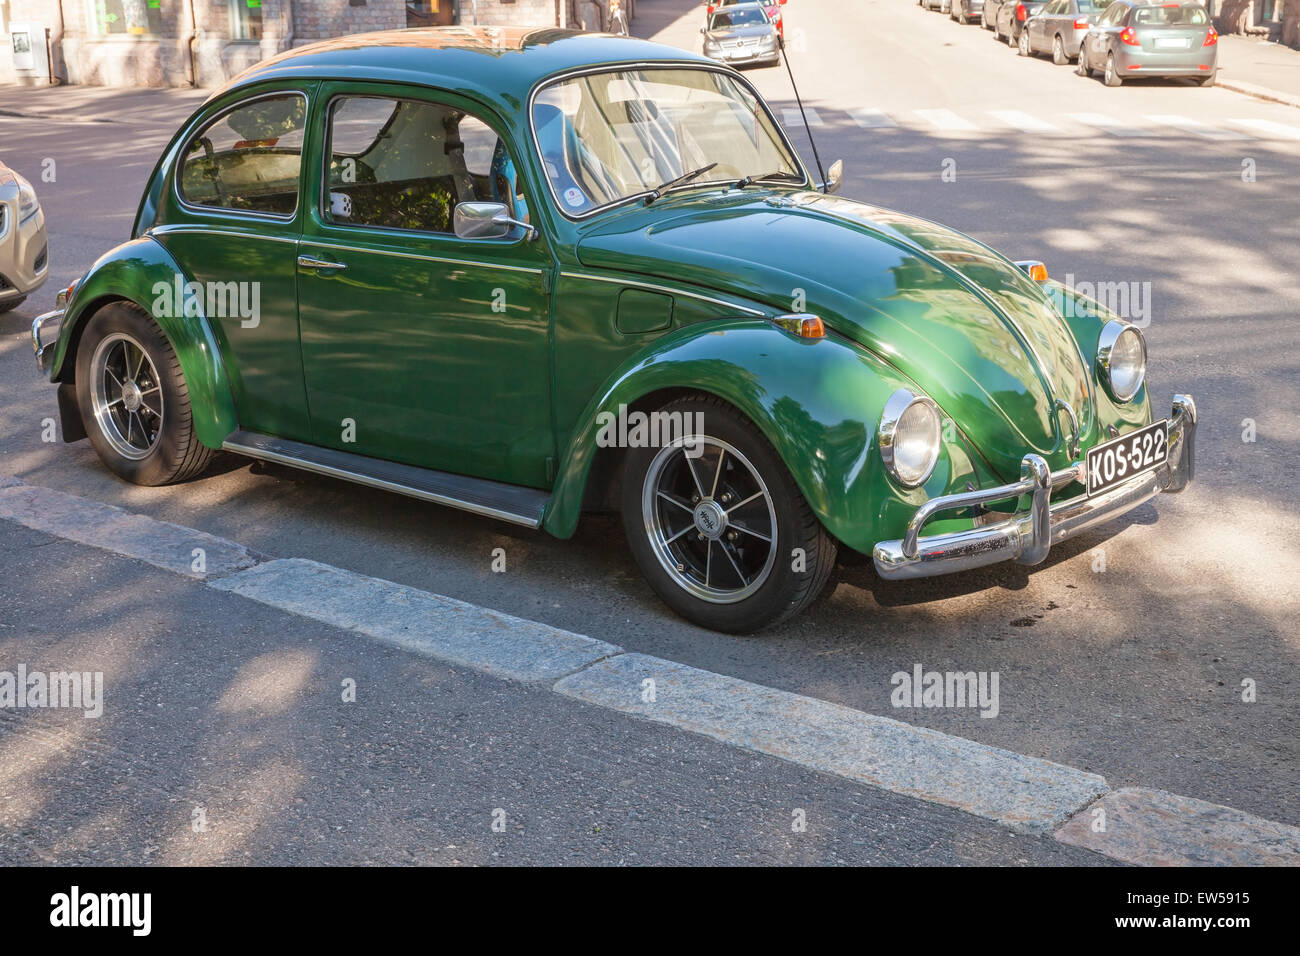 Helsinki, Finland - June 13, 2015: Green early 1966 Volkswagen Beetle car is parked on the street of Helsinki Stock Photo